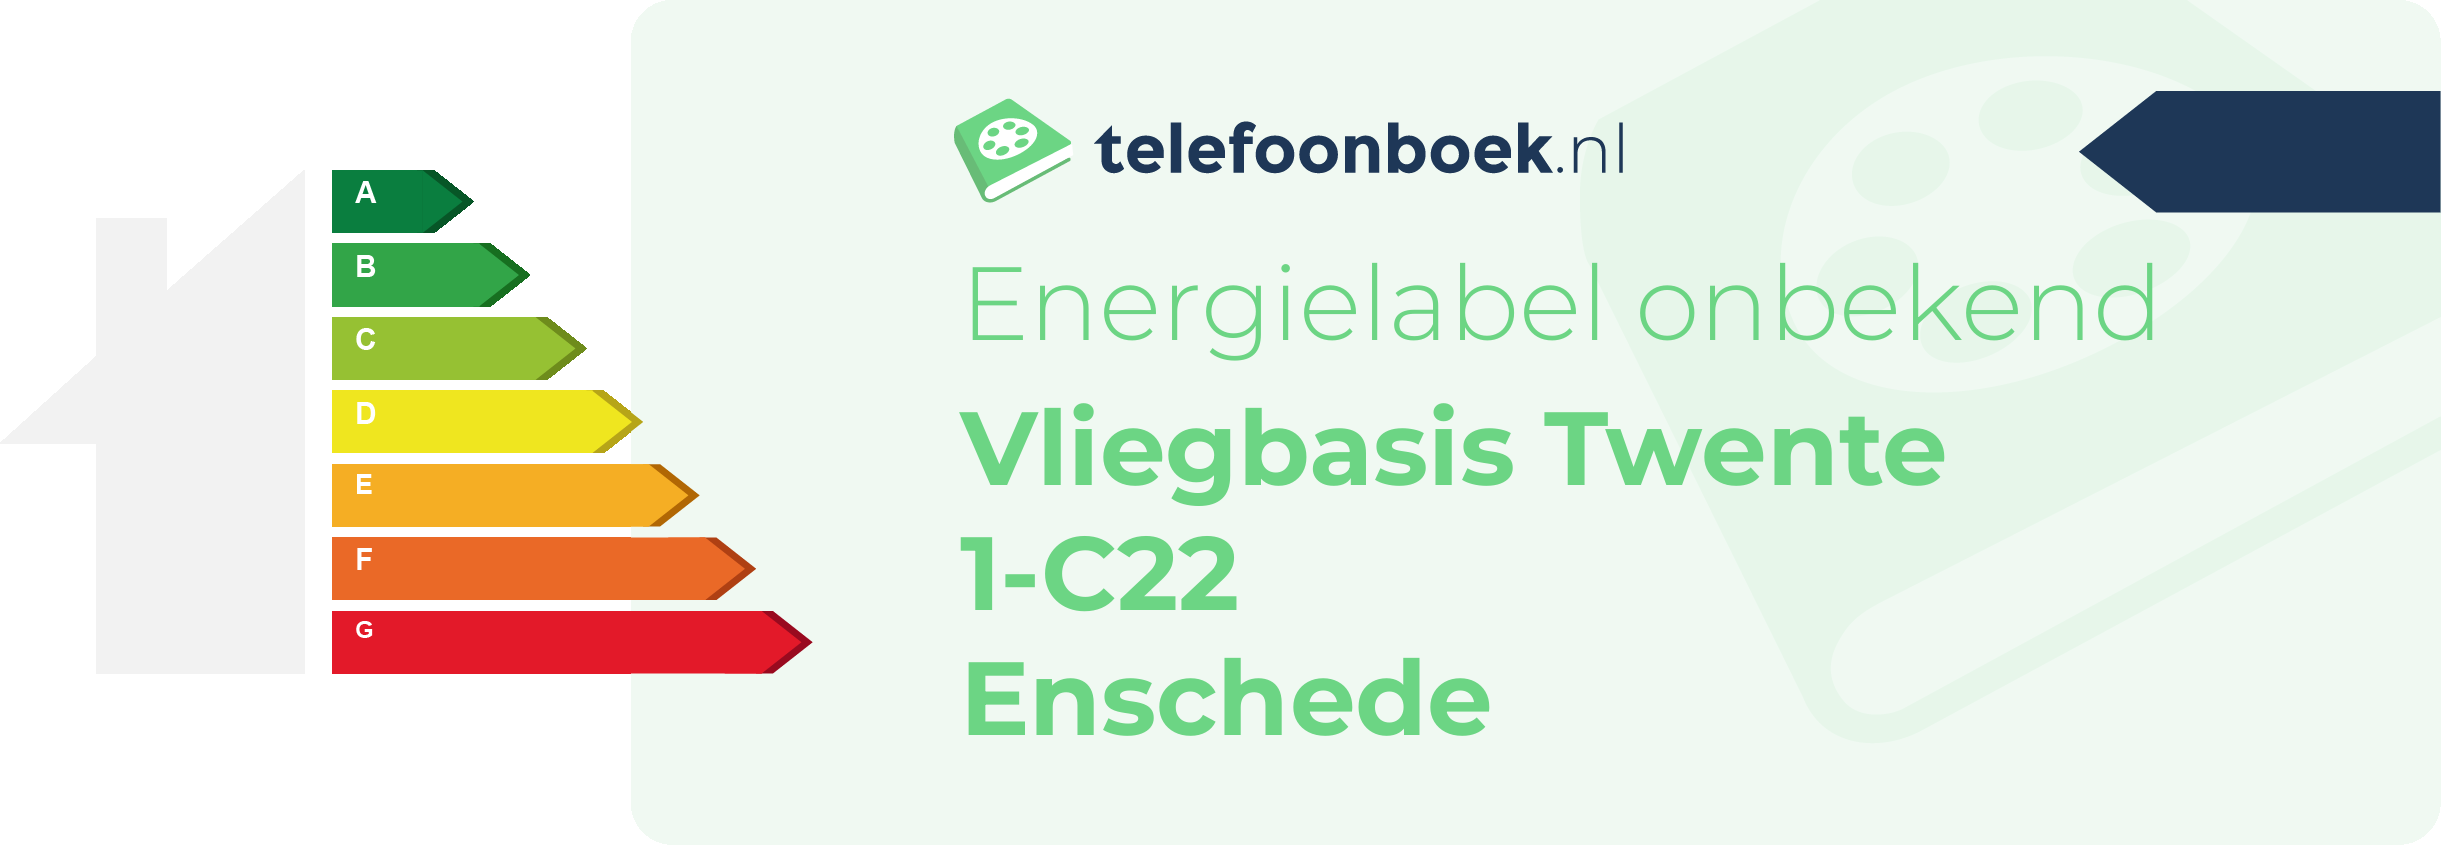 Energielabel Vliegbasis Twente 1-C22 Enschede